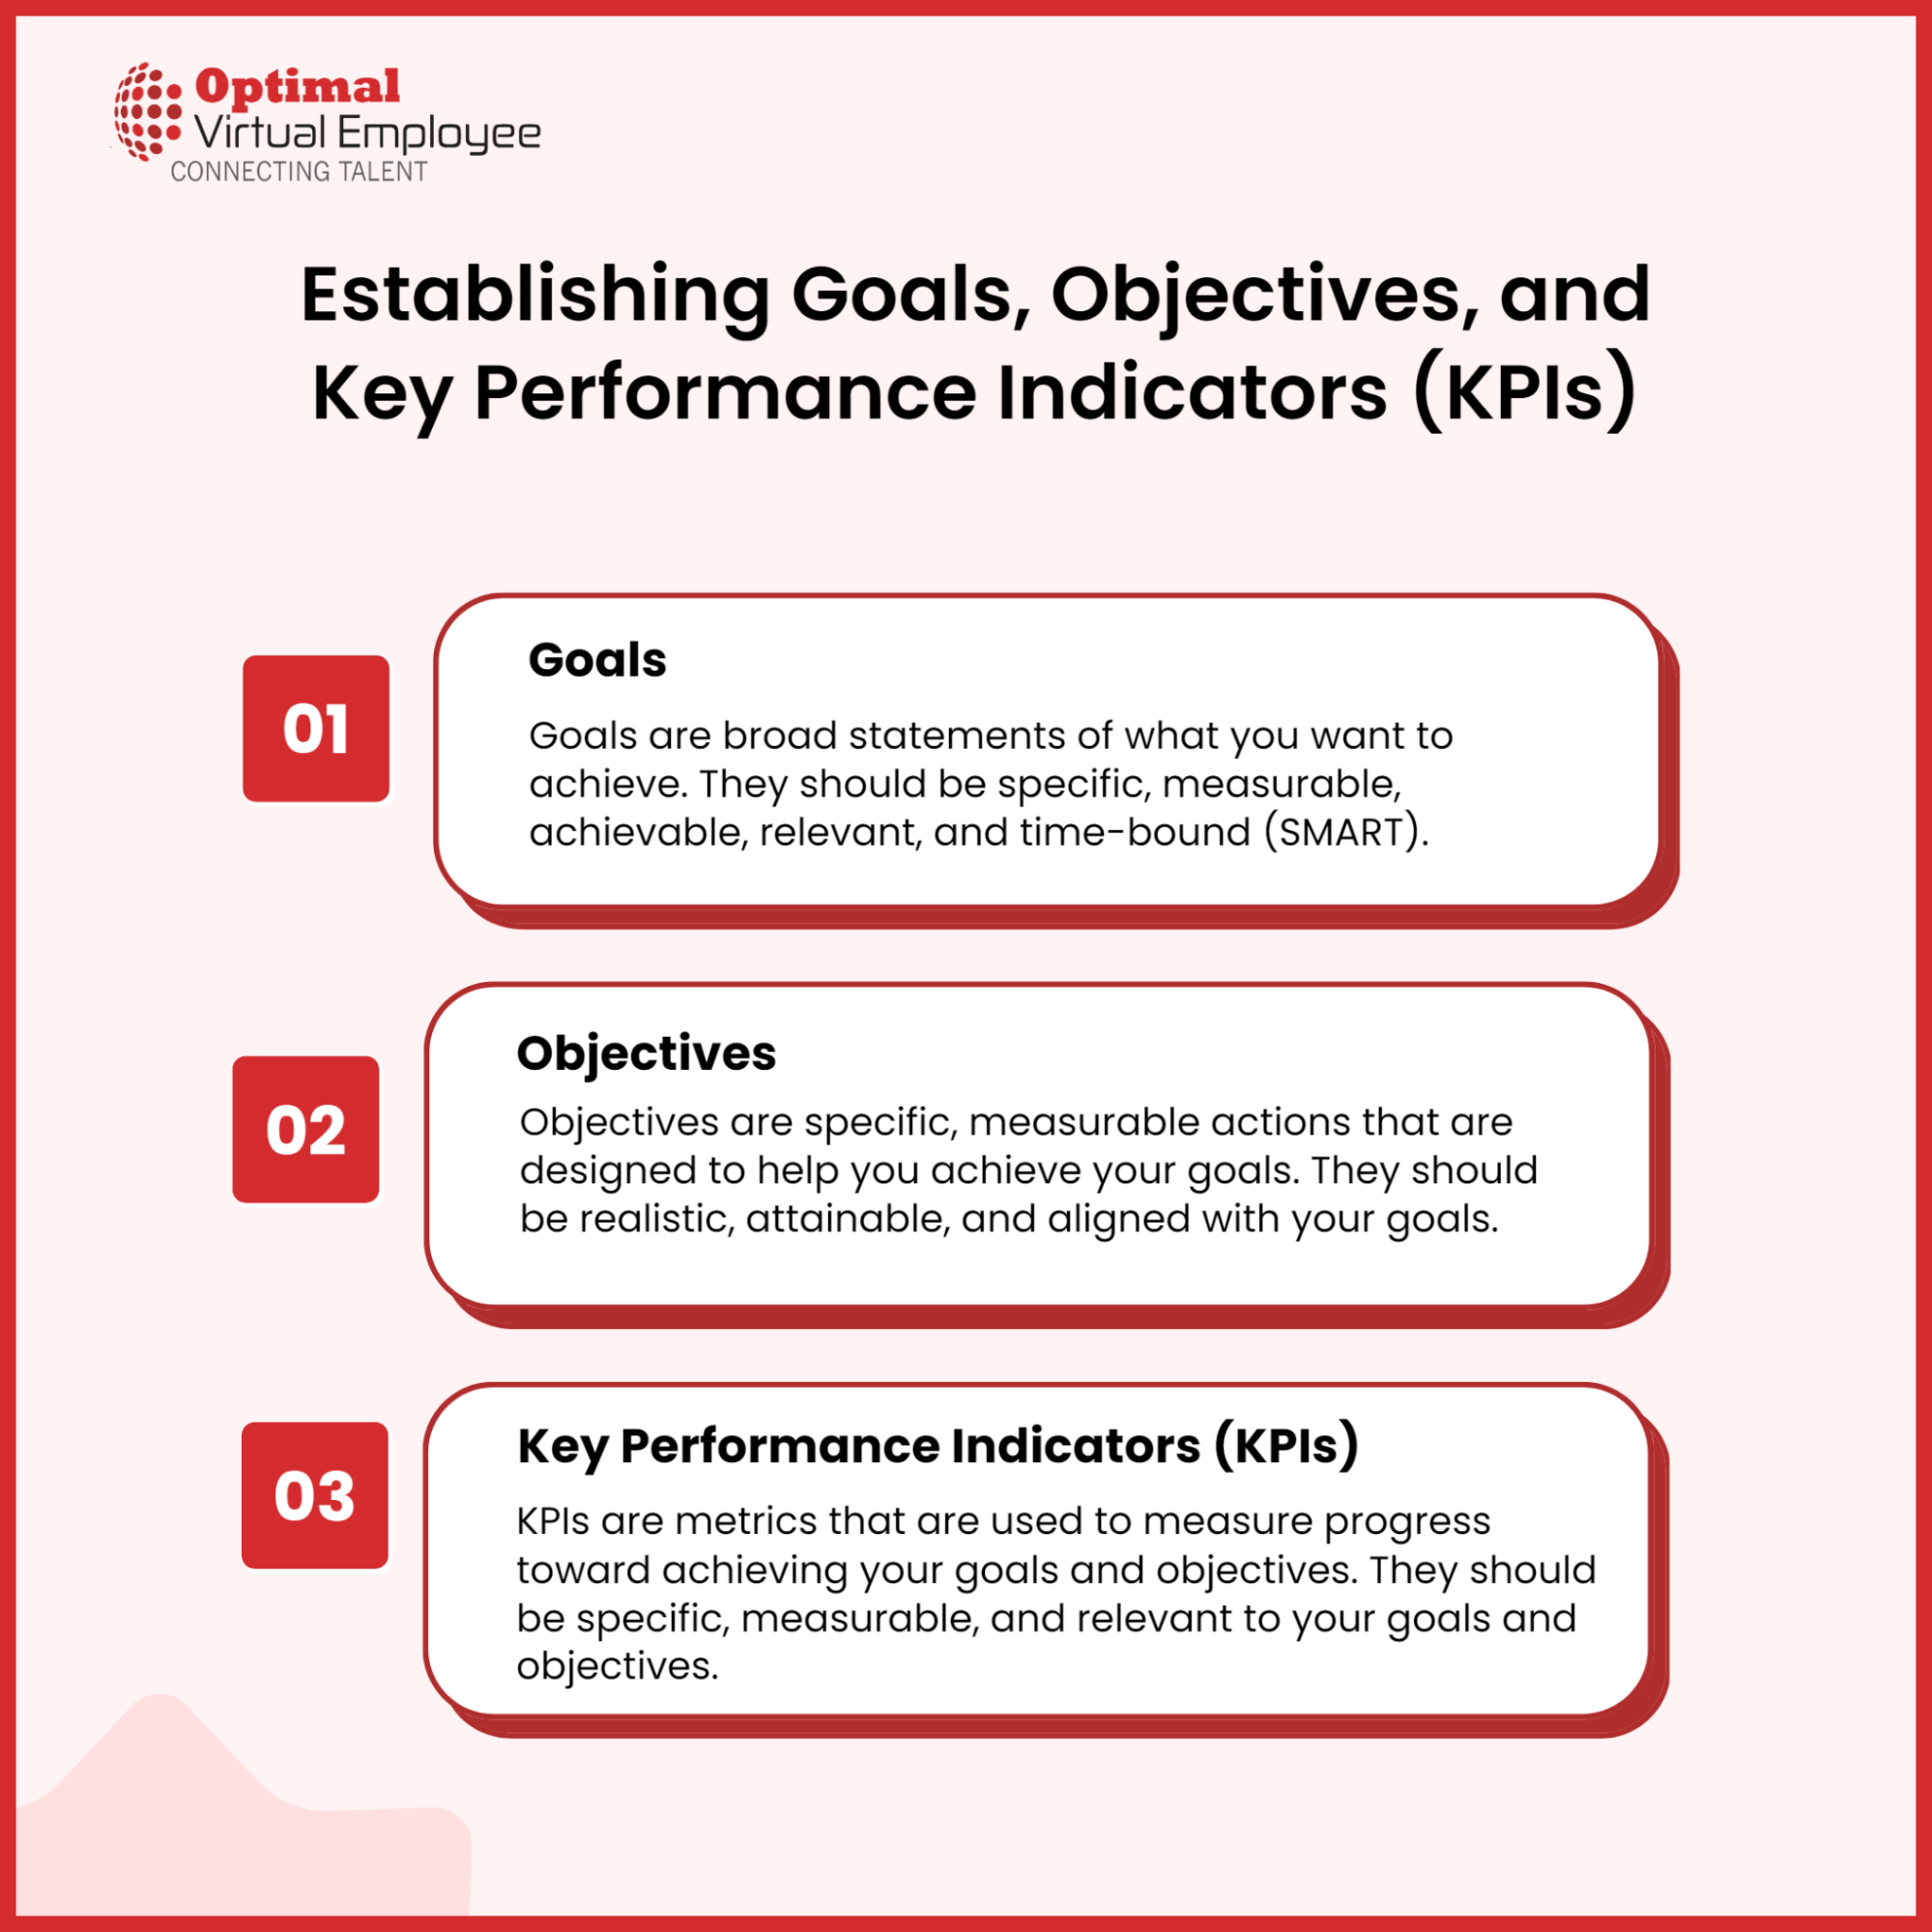 Establishing Goals, Objectives, and Key Performance Indicators (KPIs)